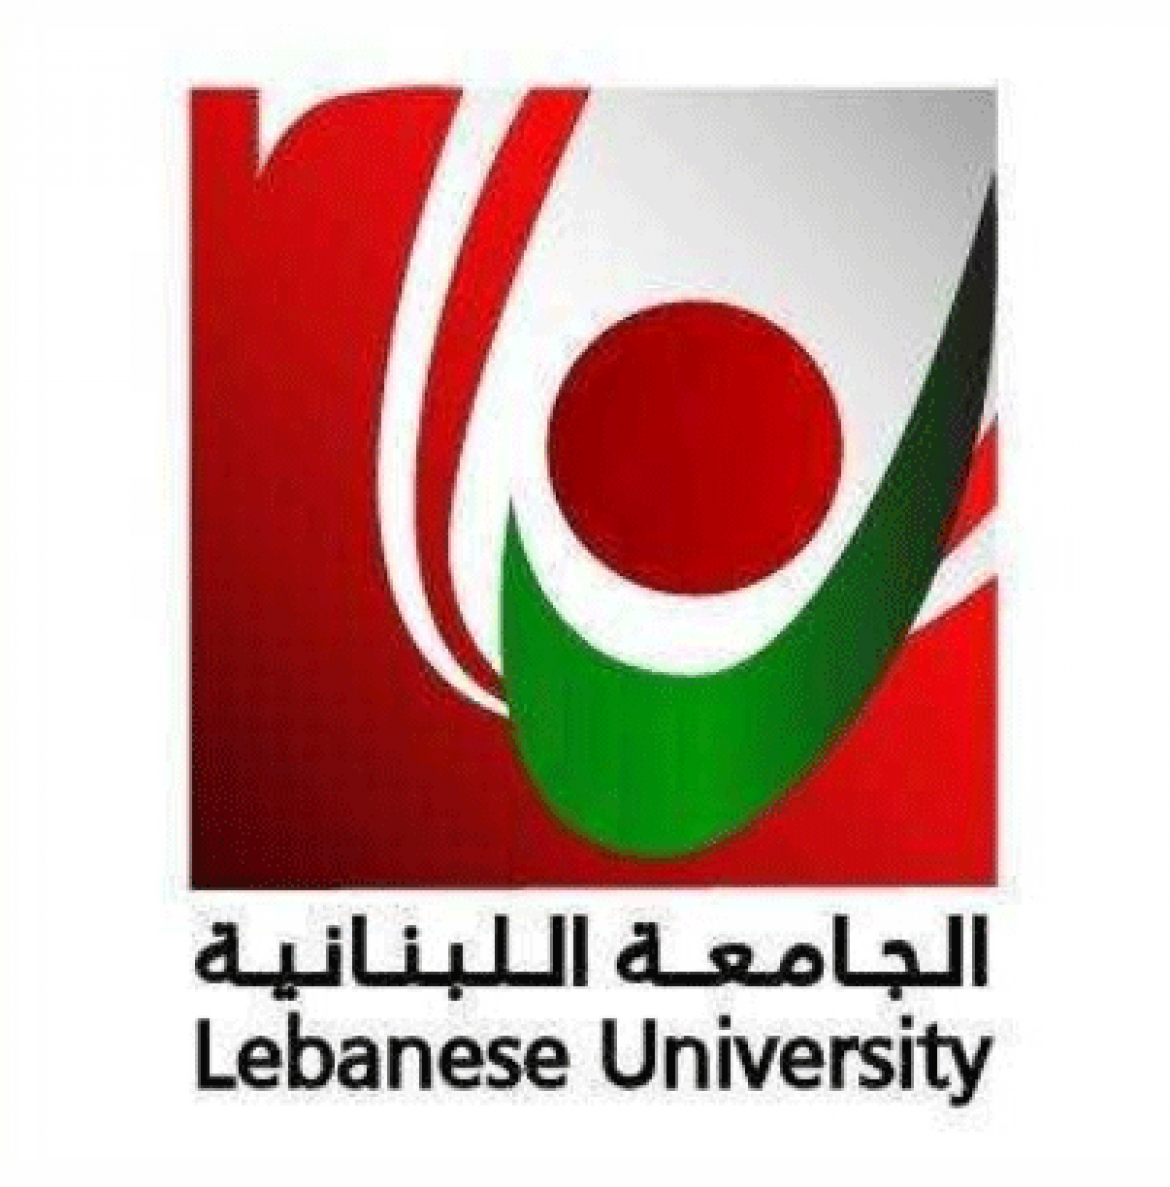 الجامعة اللبنانية الأولى في لبنان في تعليم الهندسة البترولية والصيدلة والفنون والثانية في العلوم الطبية والكيمياء والهندسة بكل مساراتها